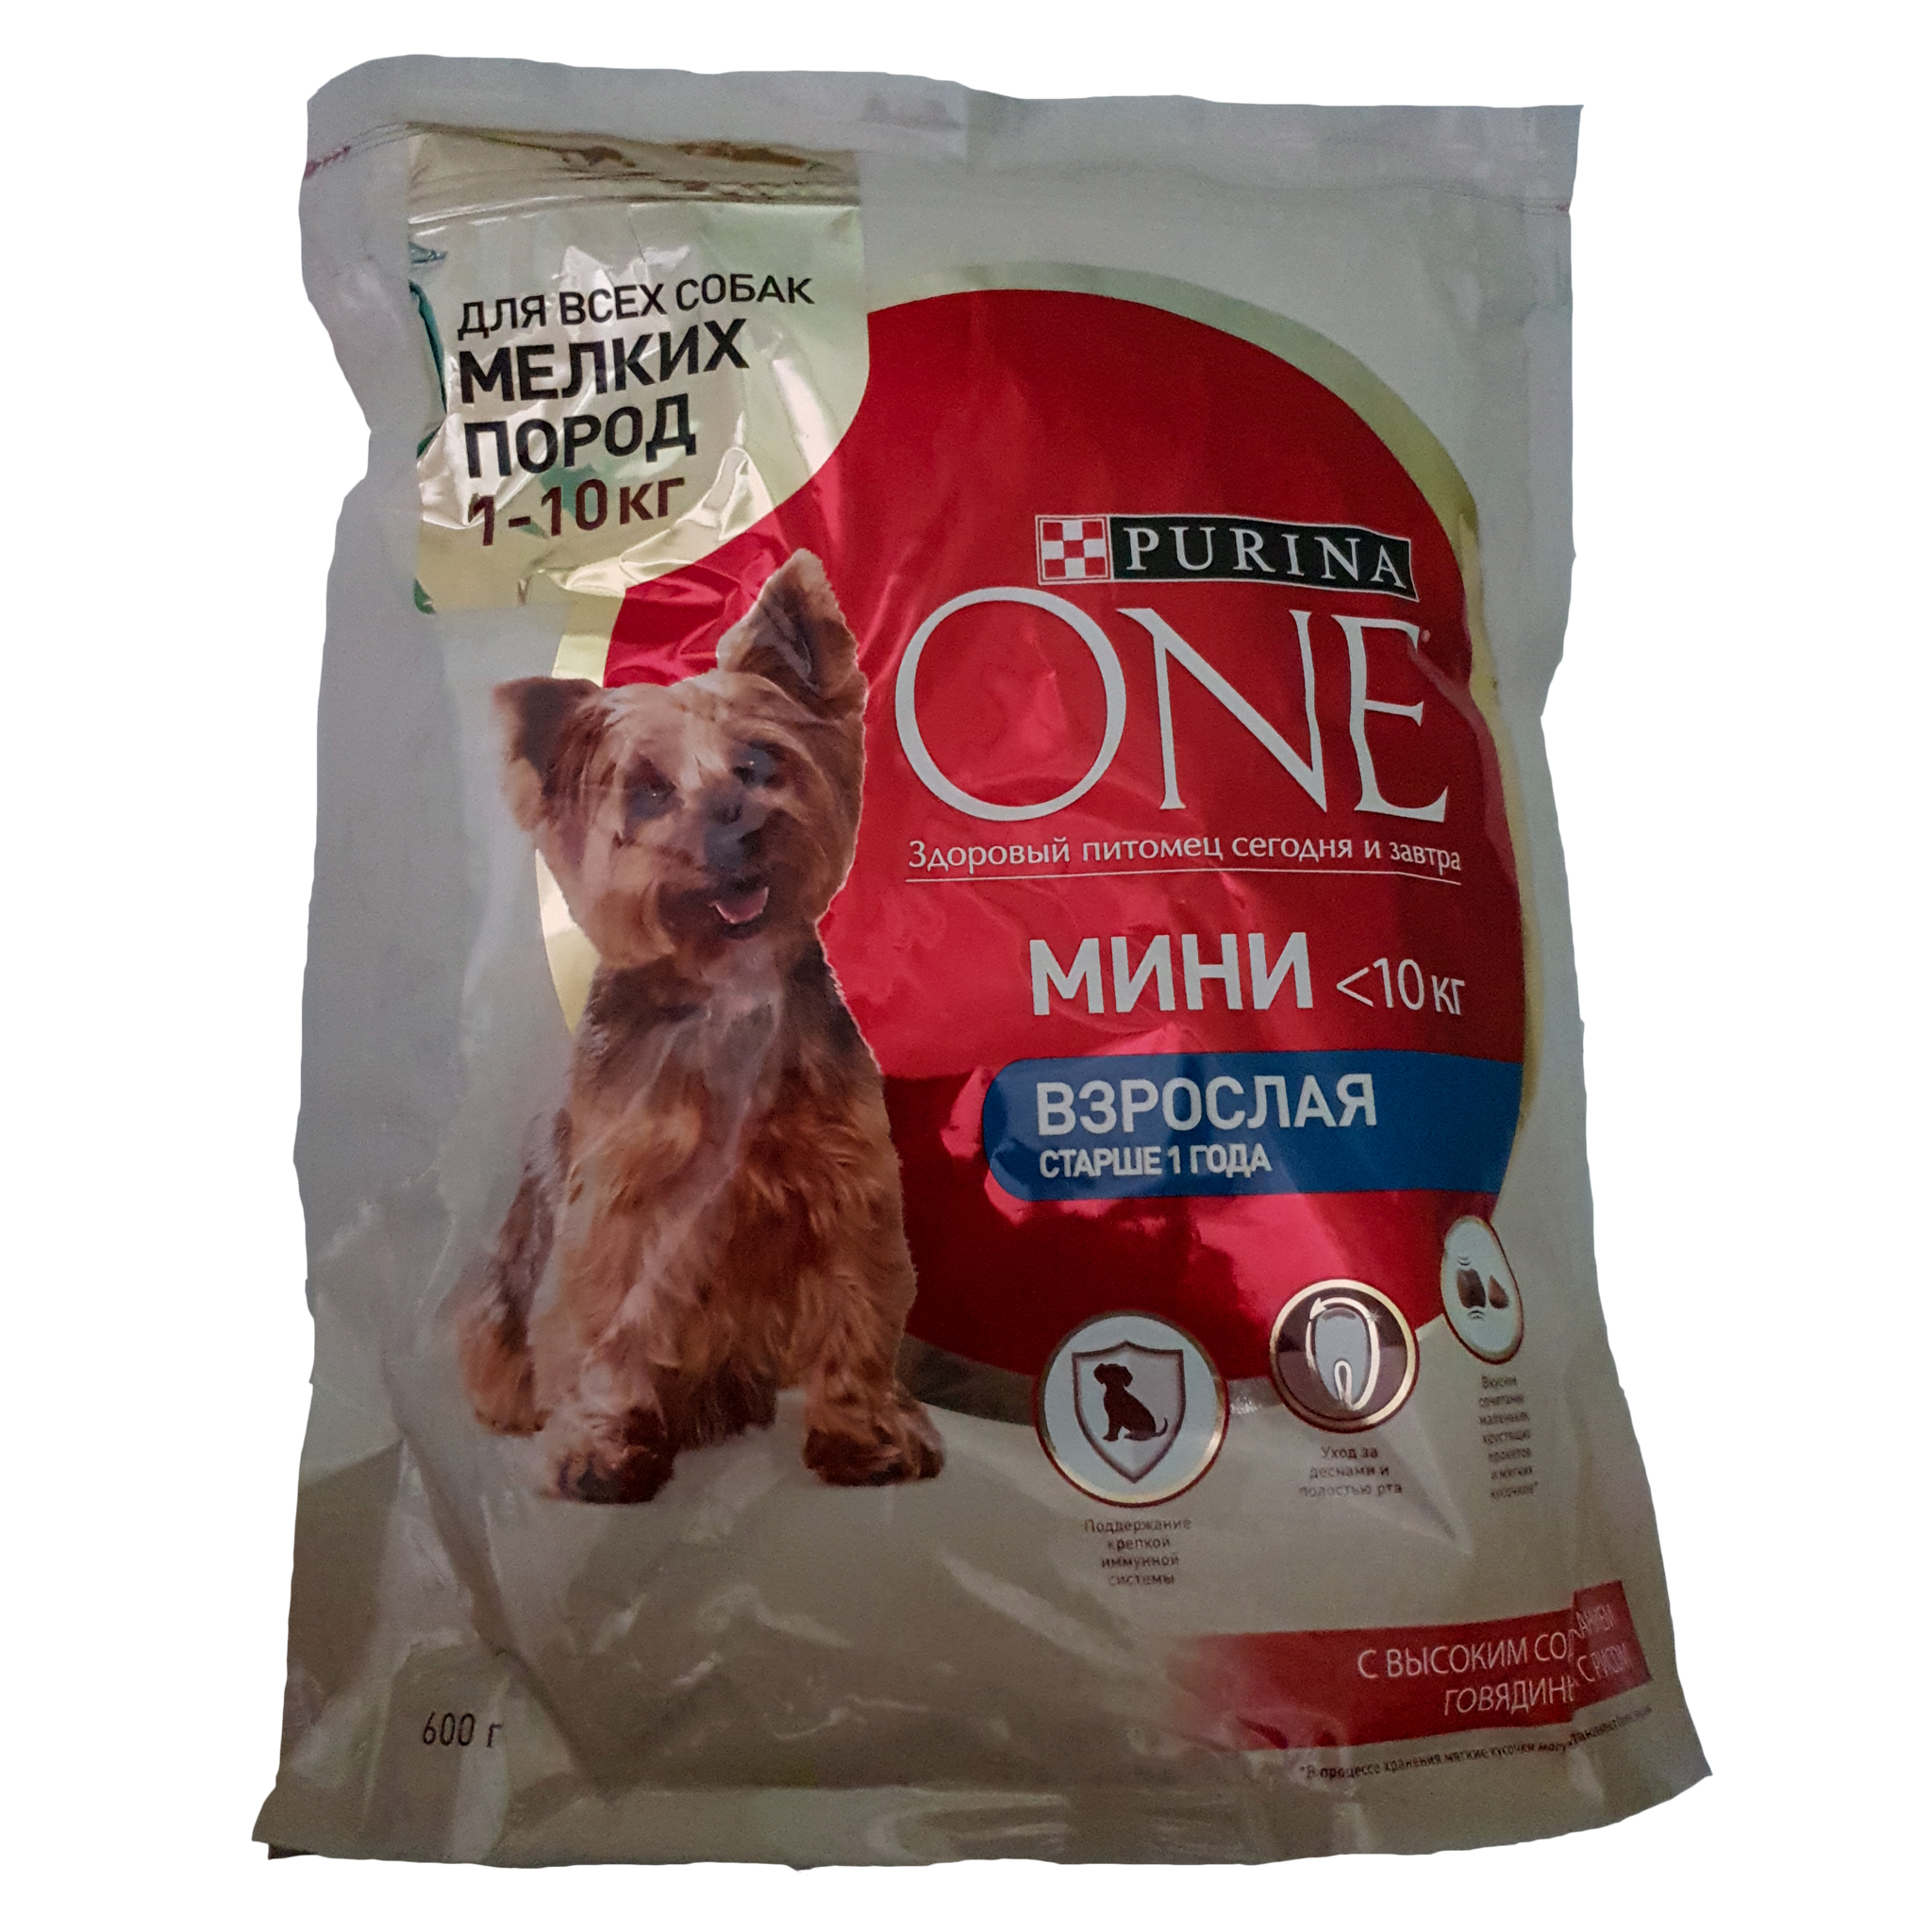 Сухой корм для собак Purina one мини - рейтинг 5 по отзывам экспертов ☑  Экспертиза состава и производителя | Роскачество